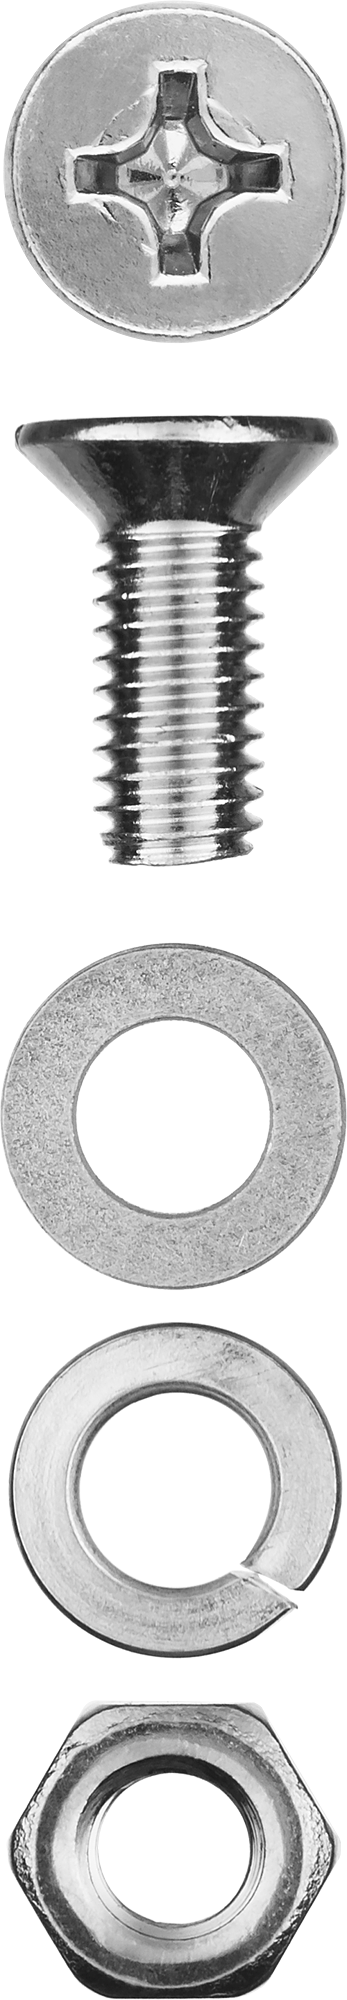 Винт (DIN965) с потайной головкой в комплекте с гайкой (DIN934), шайбой (DIN125), шайбой пруж. (DIN127) Зубр 303456-04-016, М4, 1.6 см, 965 DIN, 4 мм, оцинкованная сталь, 30 шт., фасовка (303456-04-016)